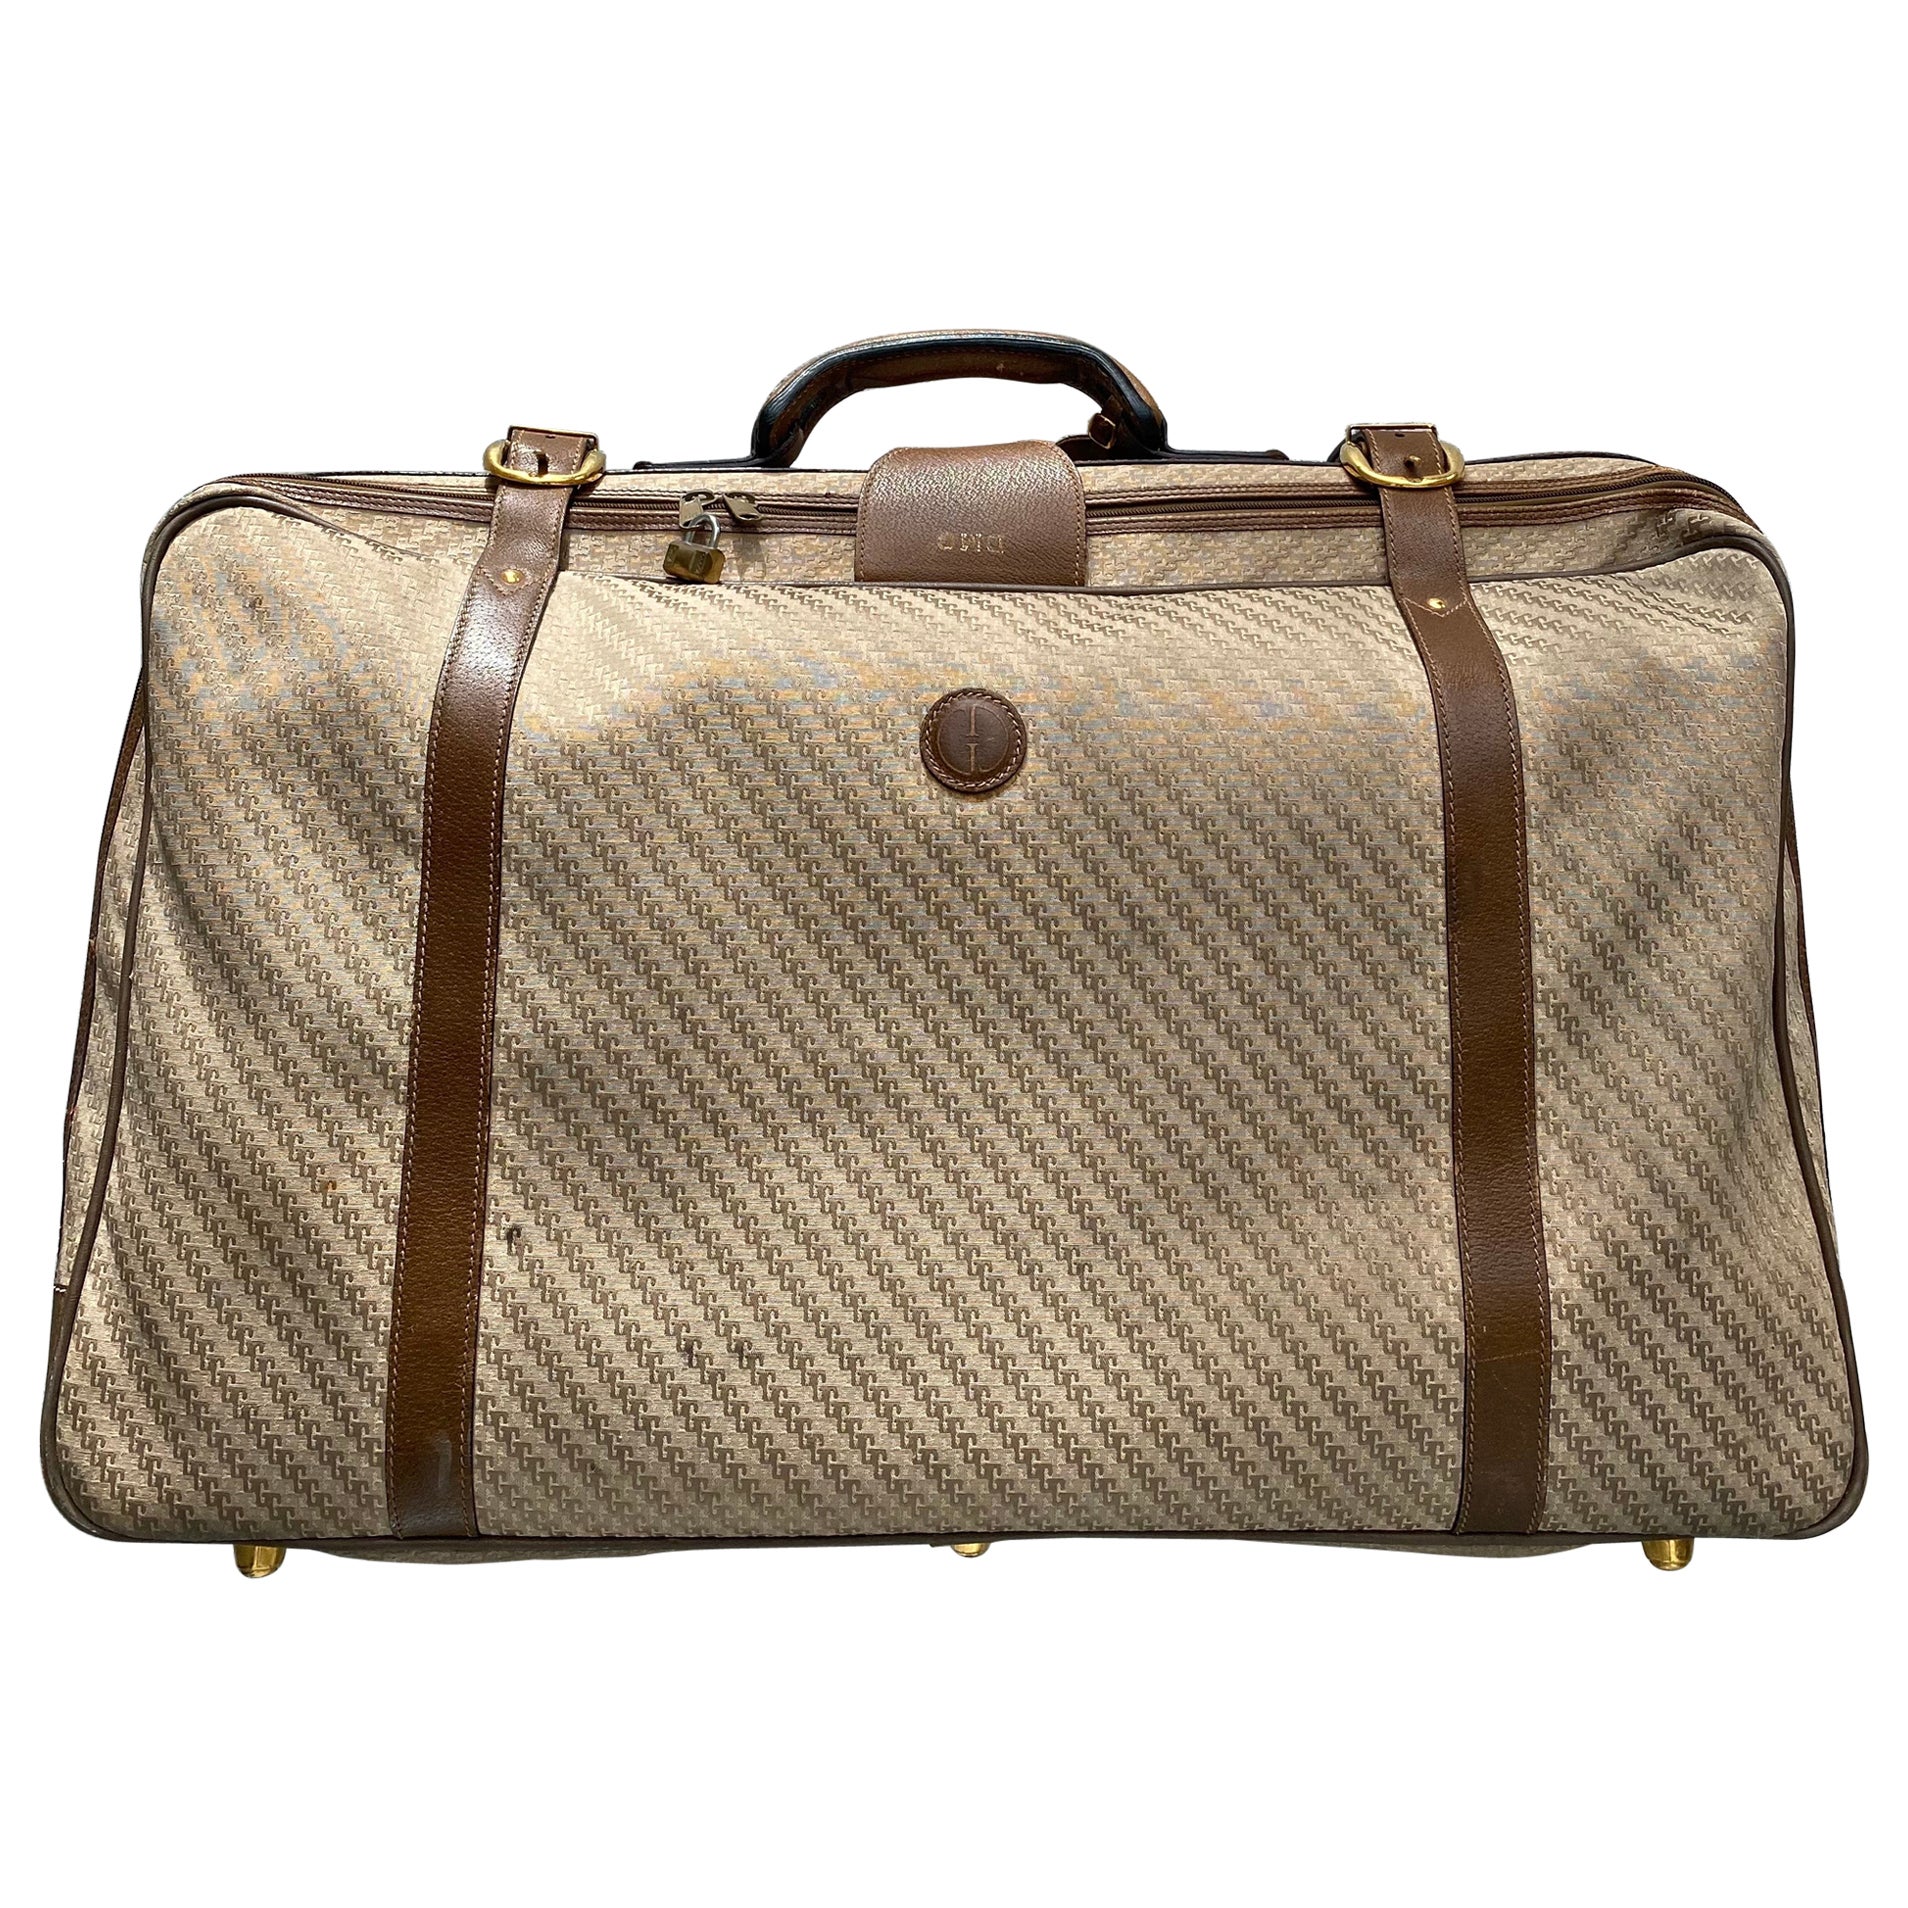 Gucci, valise de voyage rare avec monogramme GG